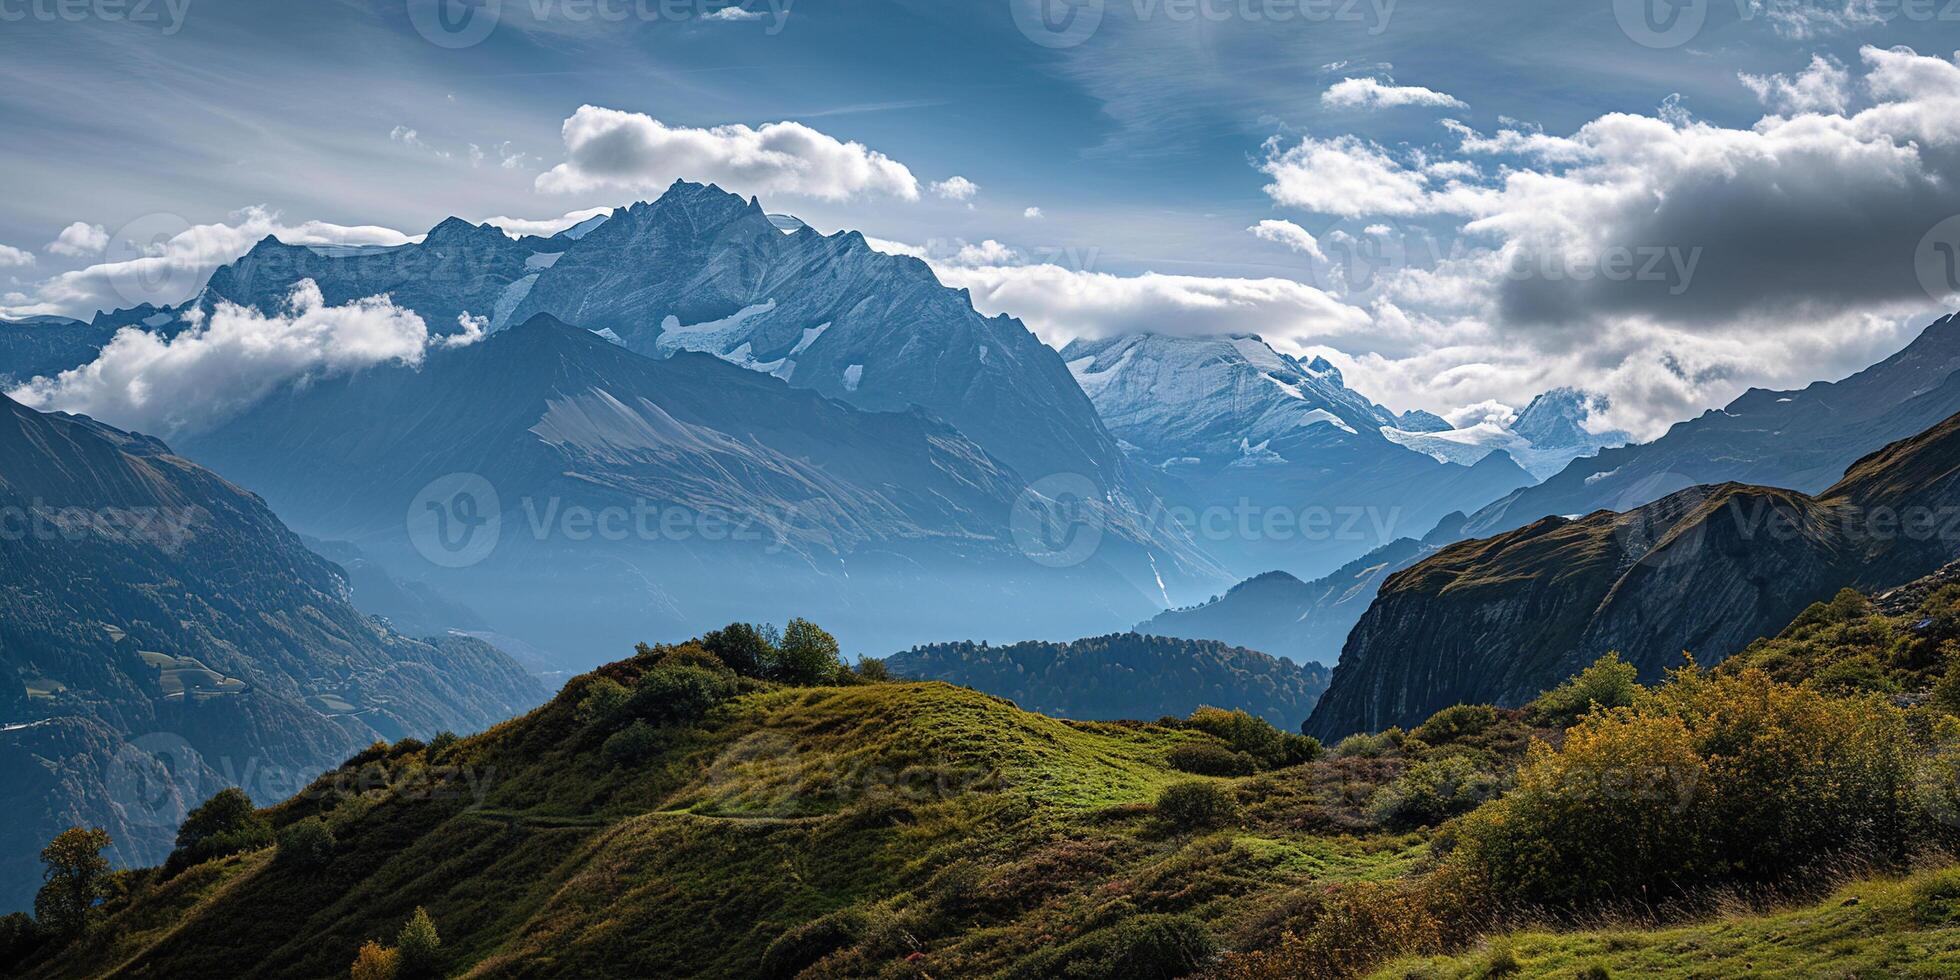 ai gegenereerd Zwitsers Alpen berg reeks met weelderig Woud valleien en weiden, platteland in Zwitserland landschap. sereen idyllisch panorama, majestueus natuur, ontspanning, rust concept foto